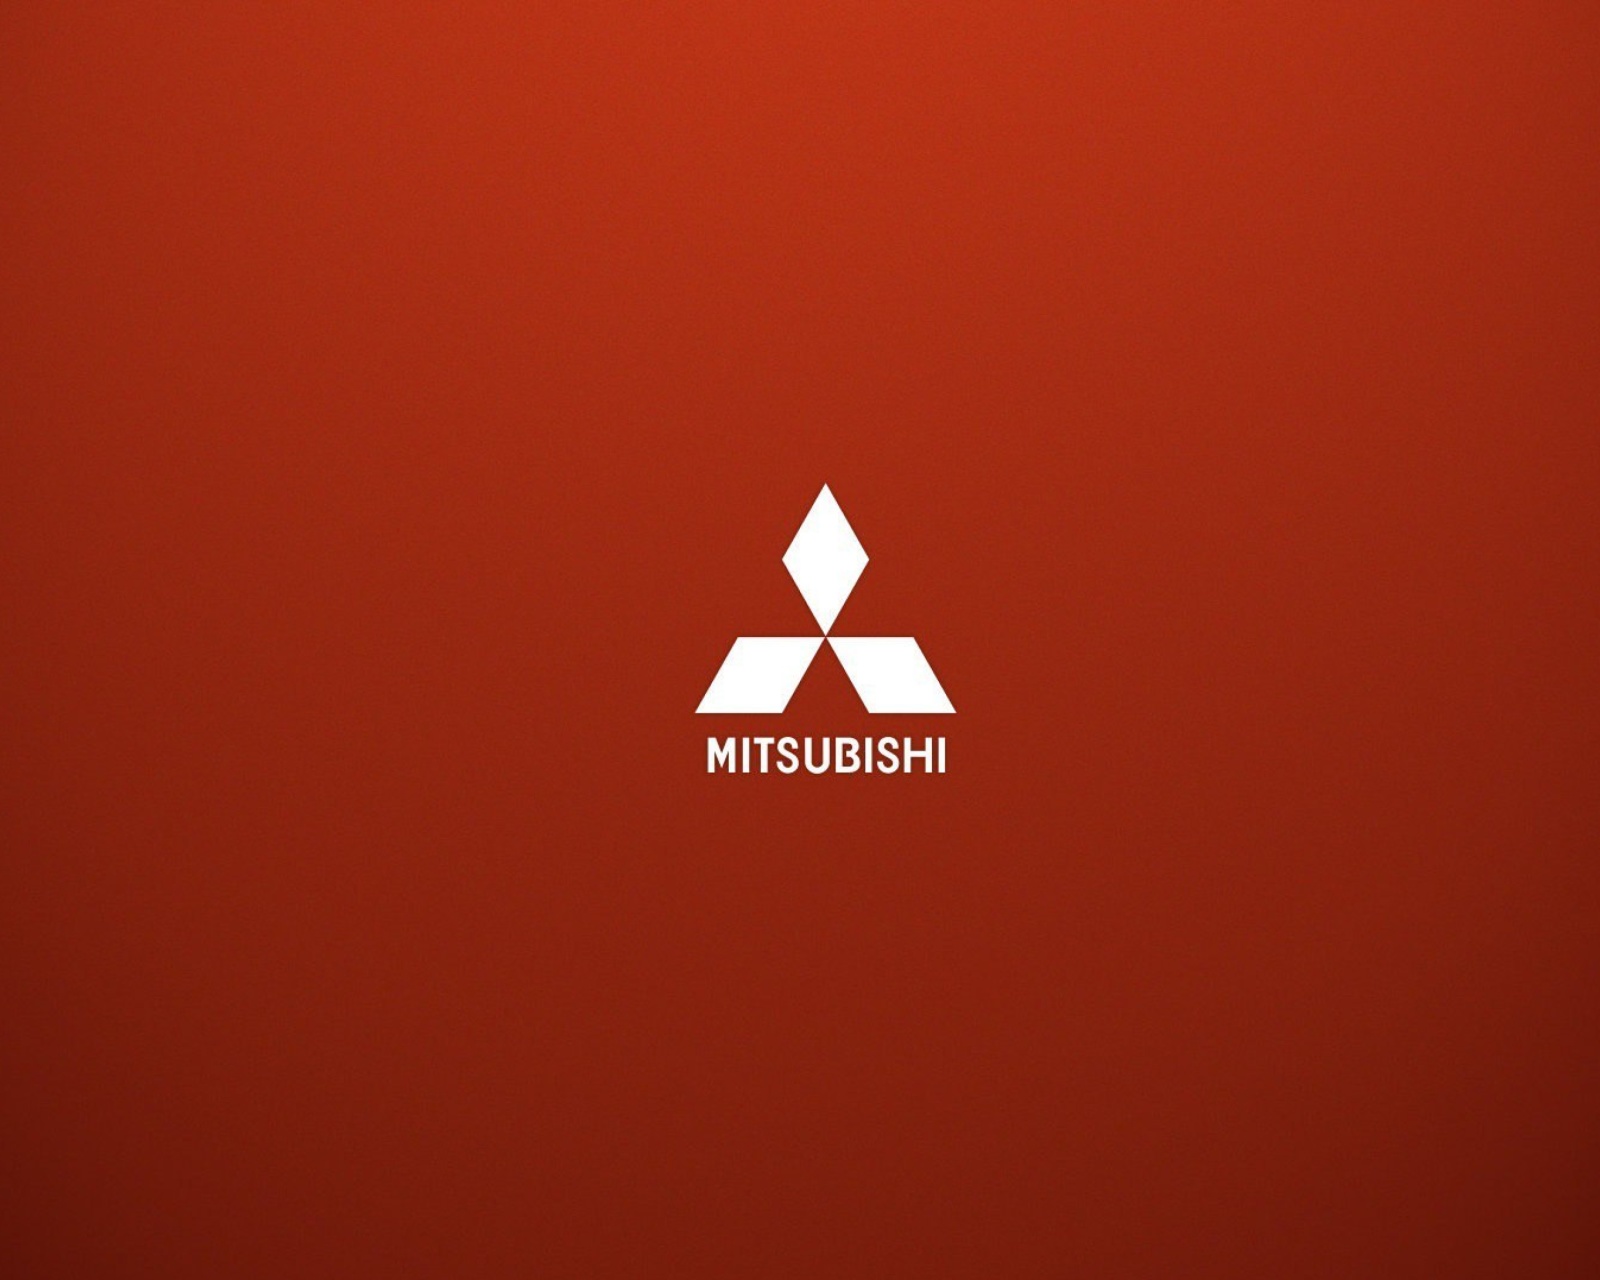 Mitsubishi logo screenshot #1 1600x1280